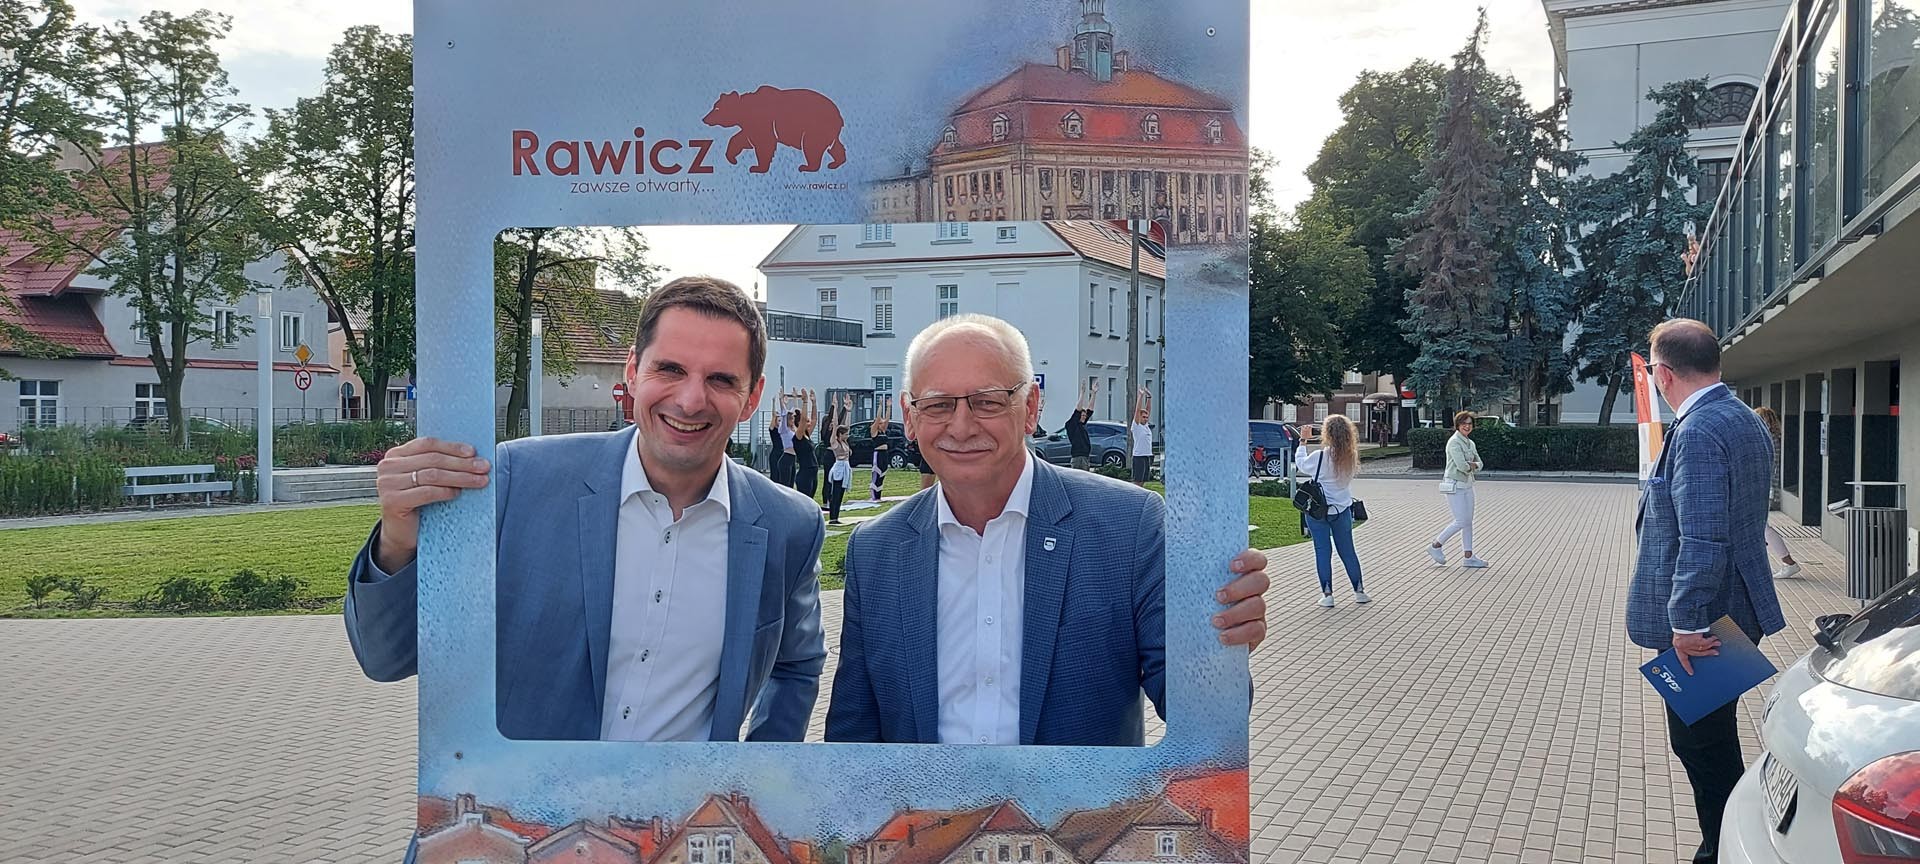 Gute Laune: Die Bürgermeister Christian Pospischil (l.) und Grzegorz Kubik verstehen sich gut. von privat